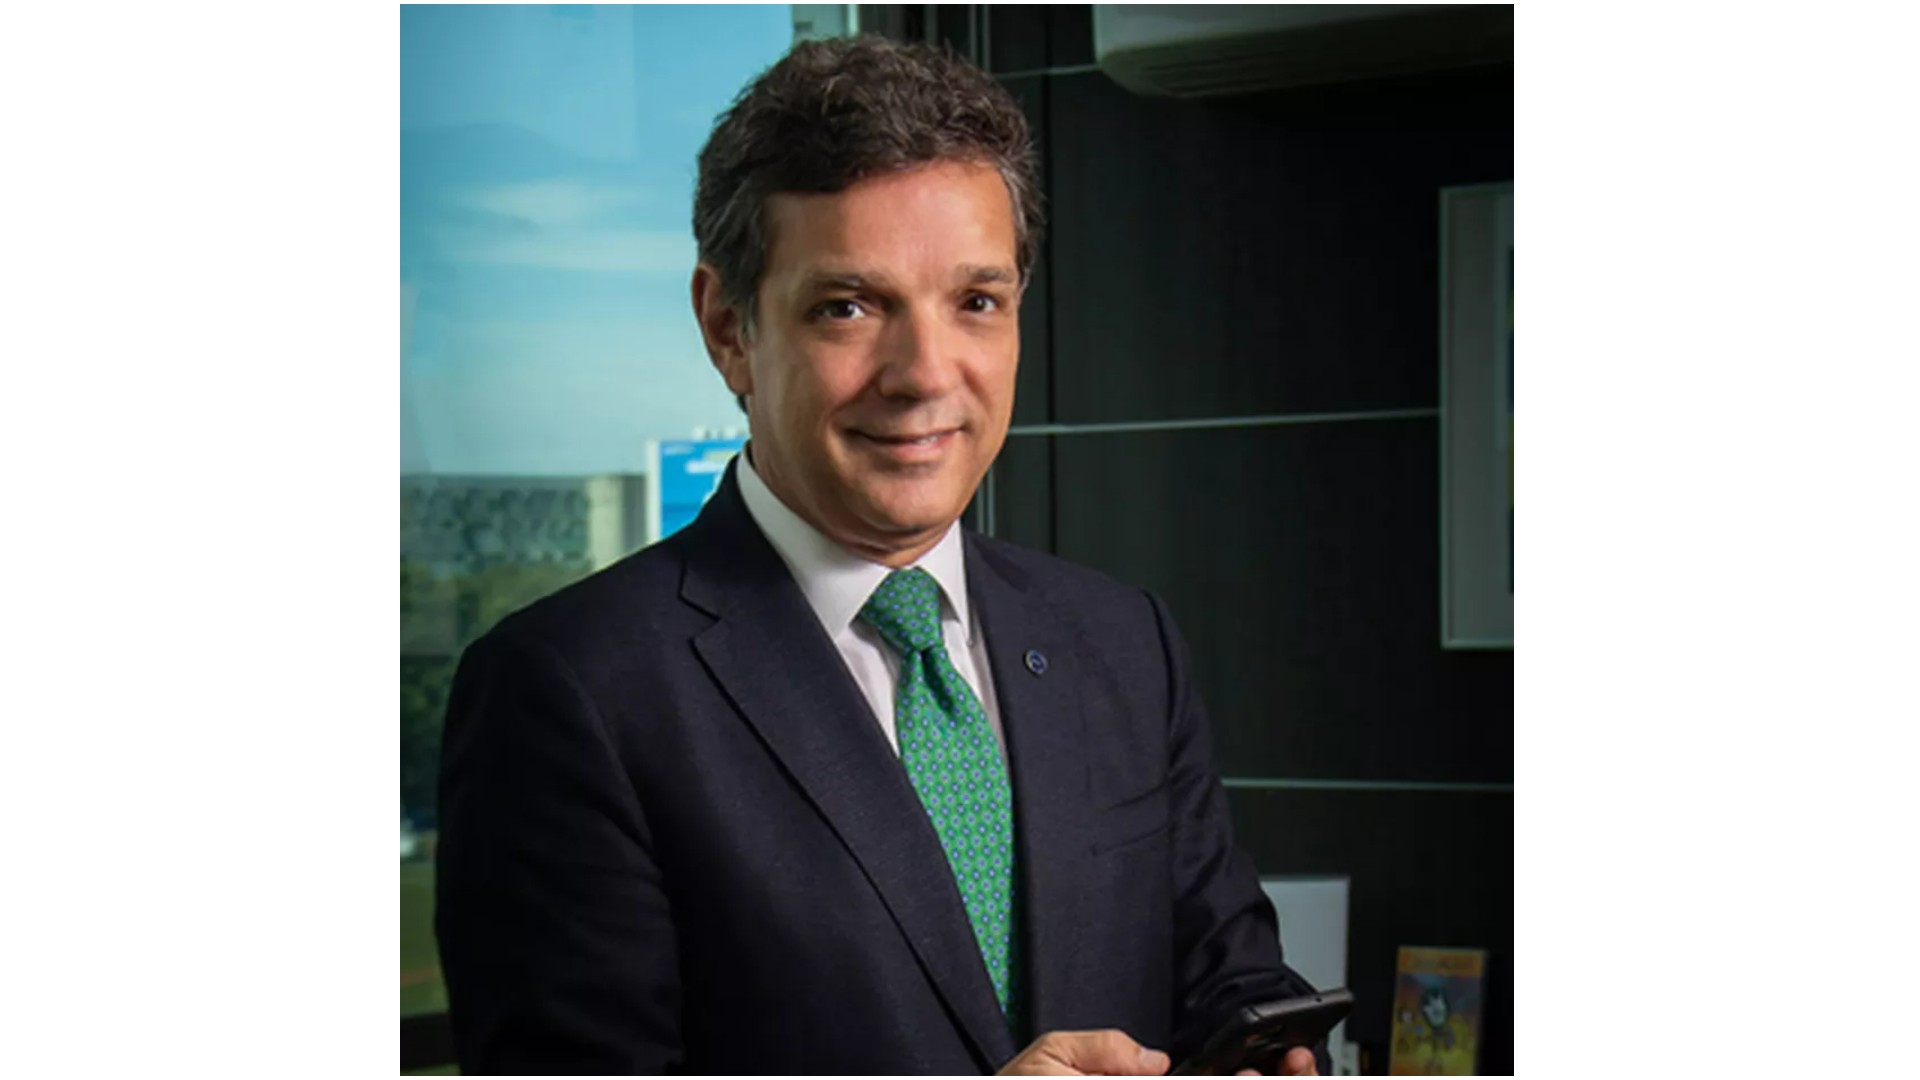 Novo presidente da Petrobras dará 'nova dinâmica' para preços dos combustíveis, diz Bolsonaro